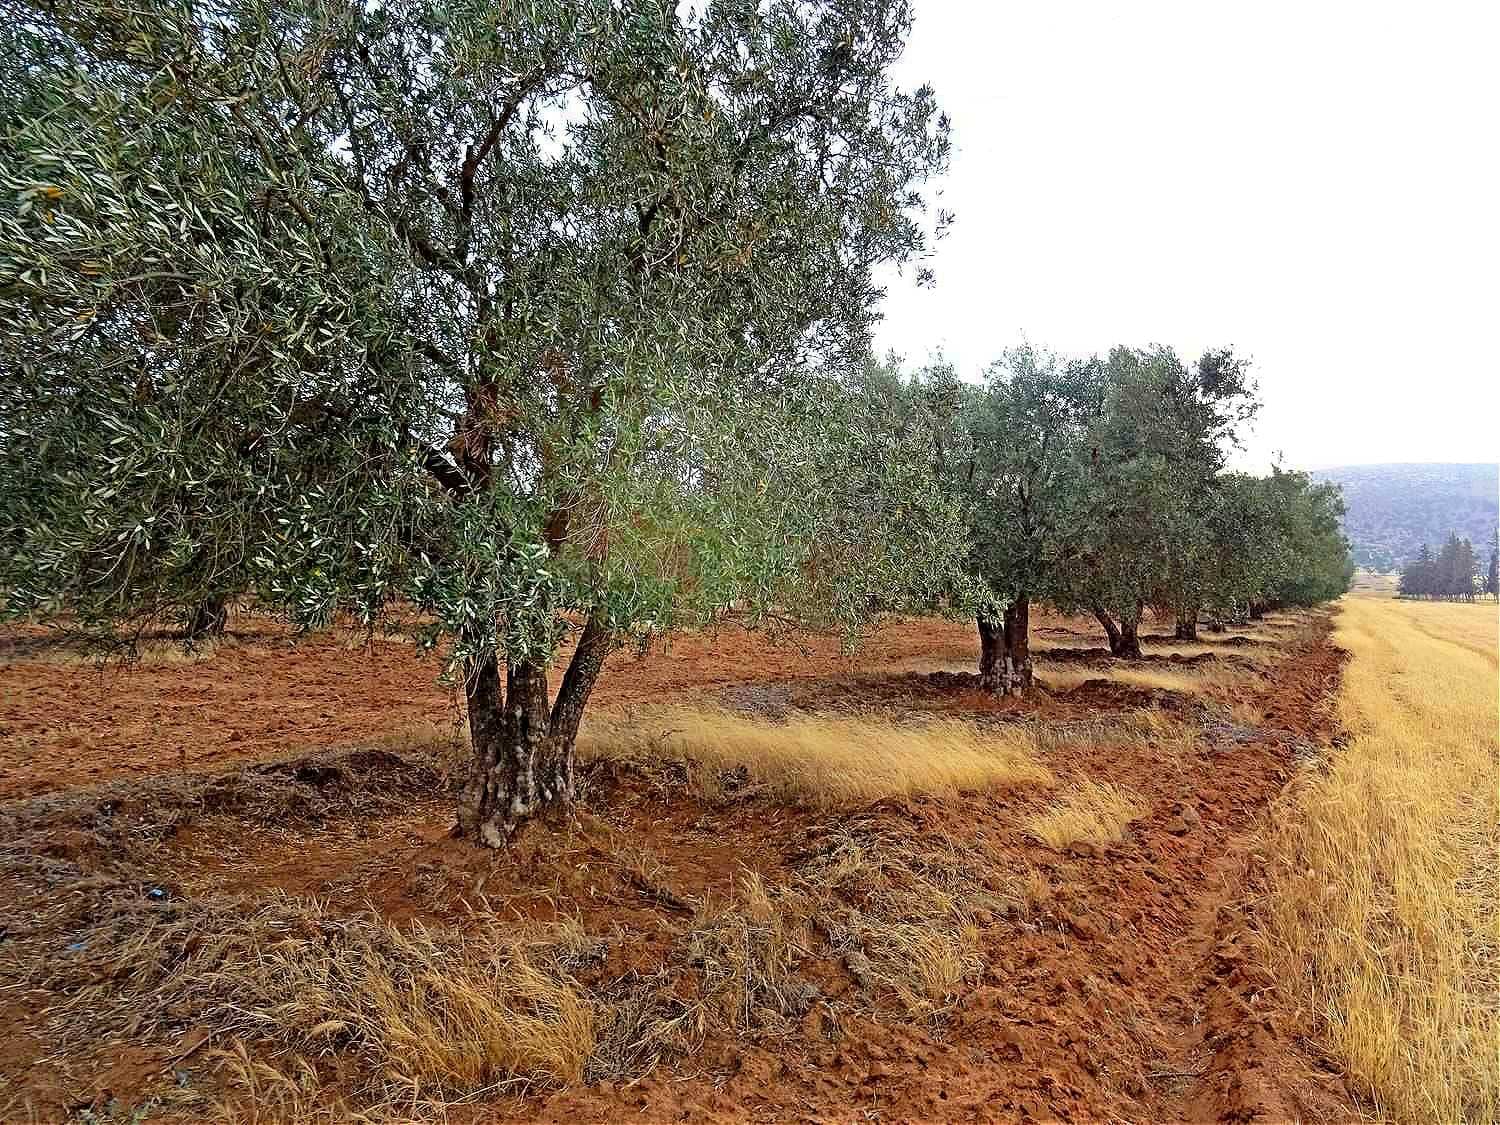 afrika-midden-oosten-business-in-bid-to-boost-export-algerije-planten-miljoenen-olijfbomen-olijfolie-tijden